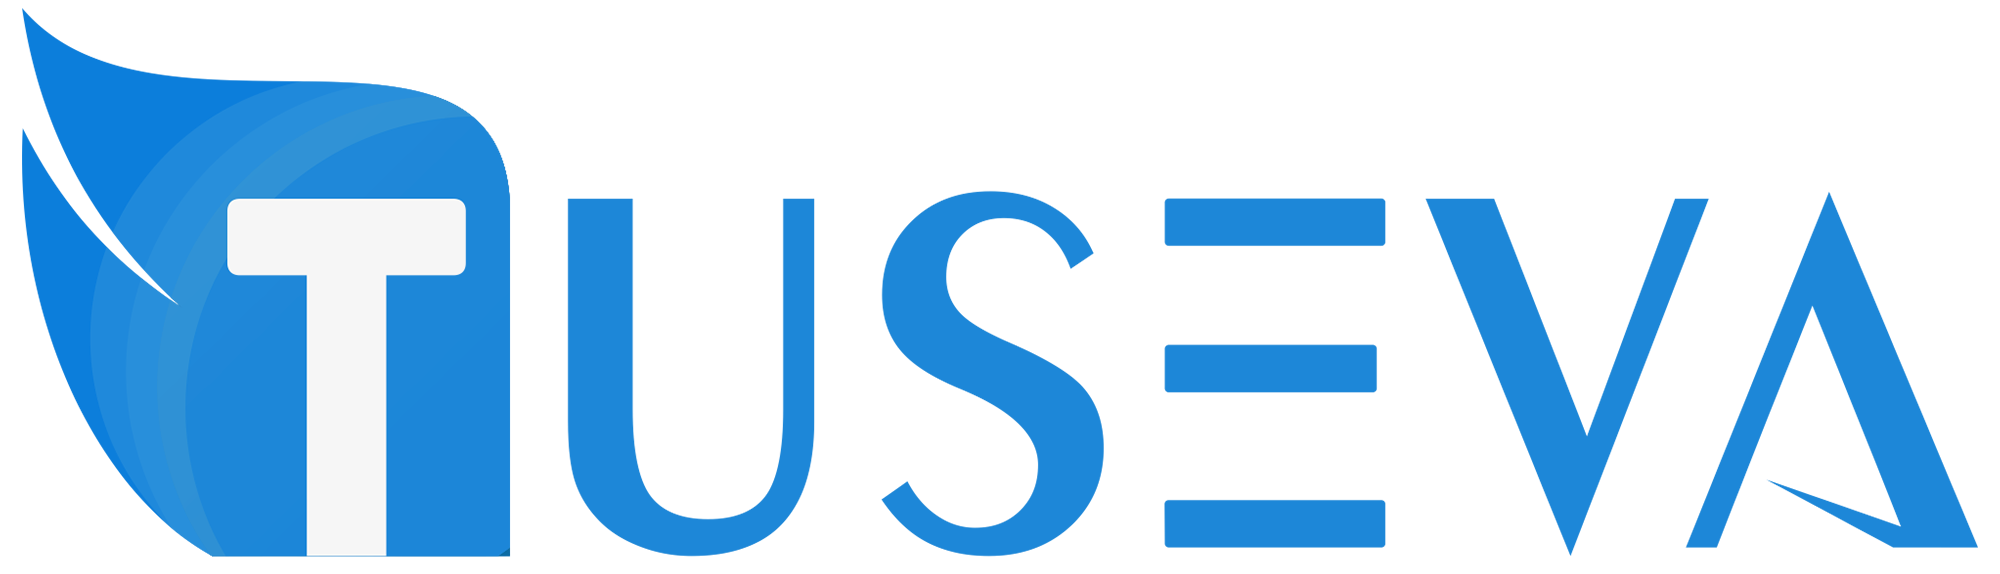 Tuseva_logo